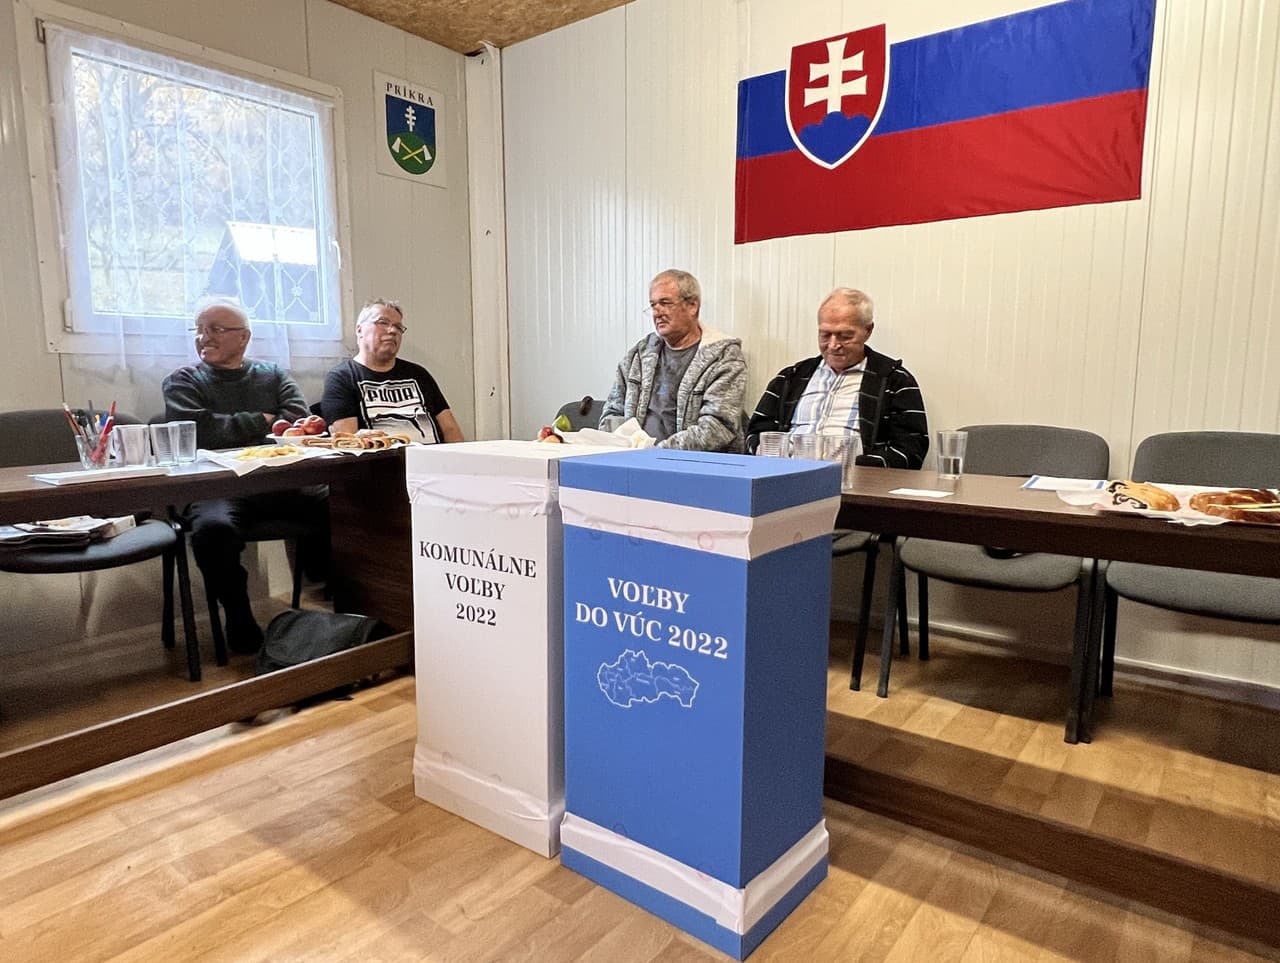 Prvé spojené voľby na Slovensku sa konali 29. októbra